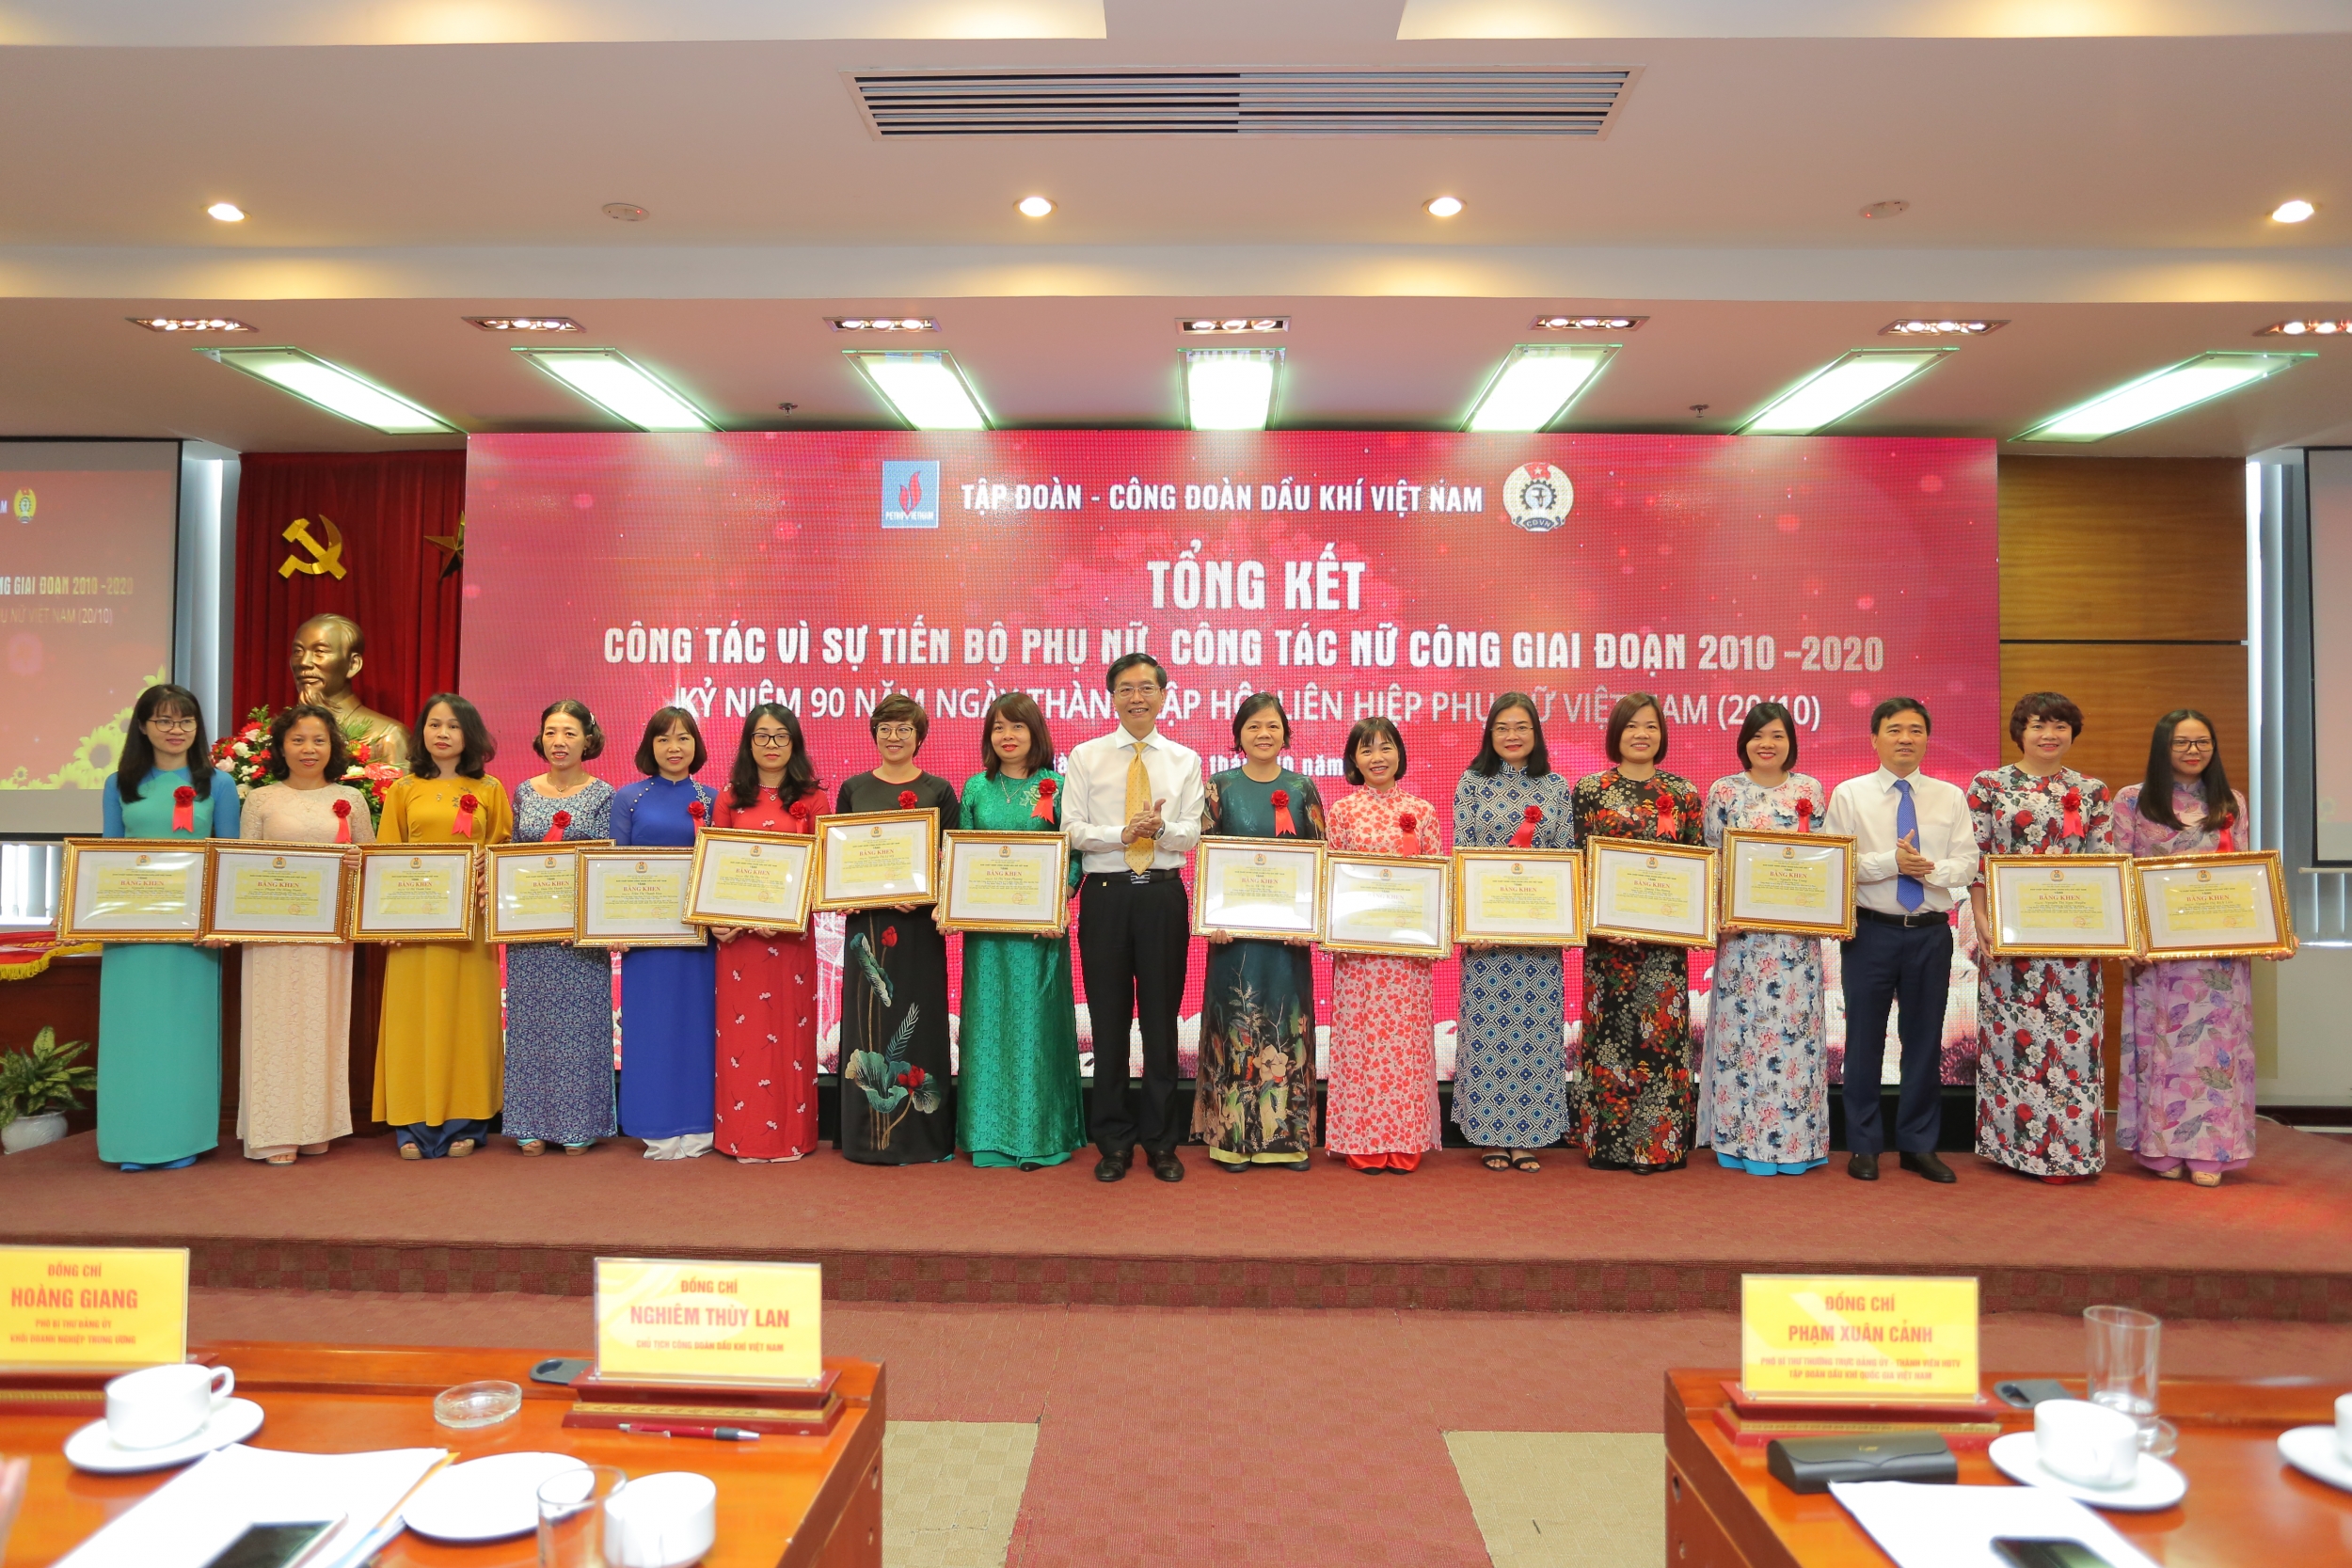 Tổng kết công tác Vì sự tiến bộ phụ nữ PVN, công tác Nữ công giai đoạn 2010   2020